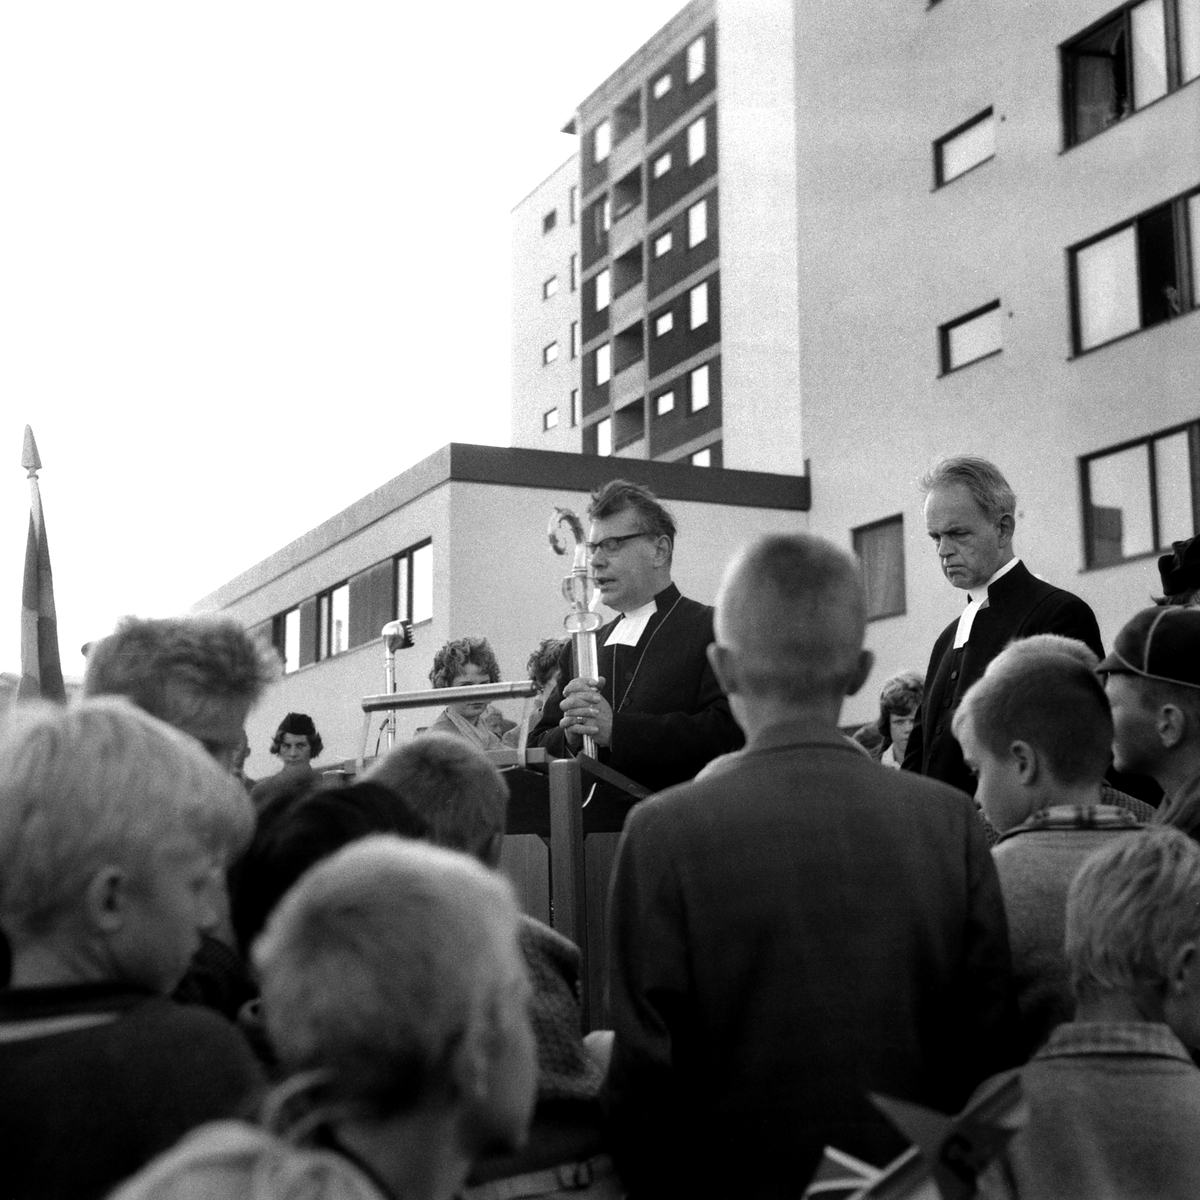 Invigning av Johannelunds centrum, 1960.